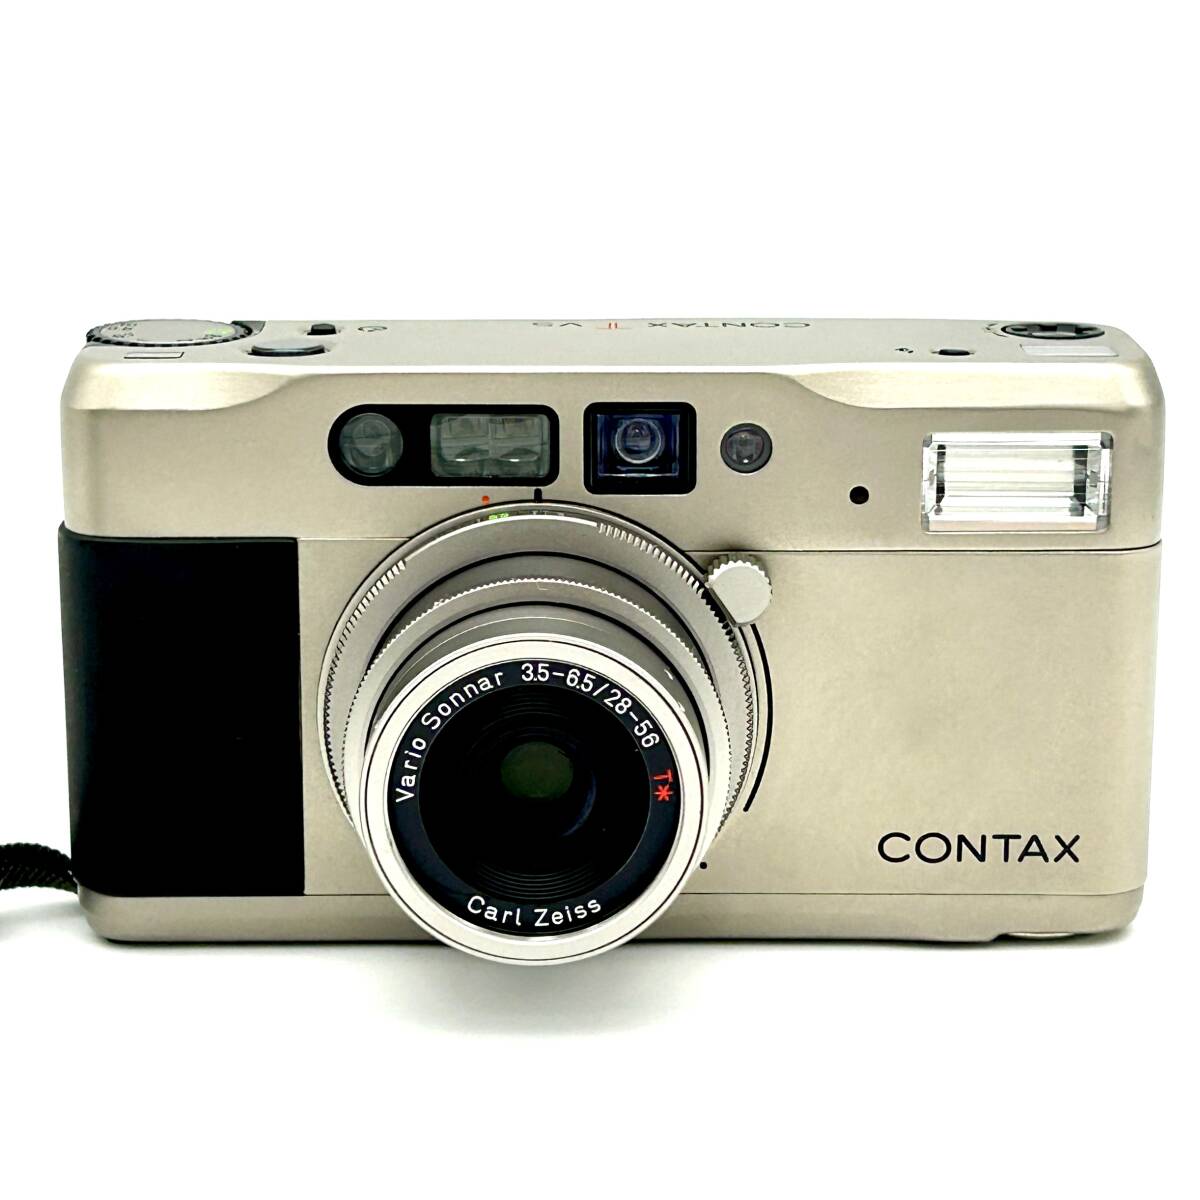 HY1530#[ shutter * flash OK]CONTAX Contax TVS compact пленочный фотоаппарат линзы Carl Zeiss Carl Zeiss принадлежности большое количество 